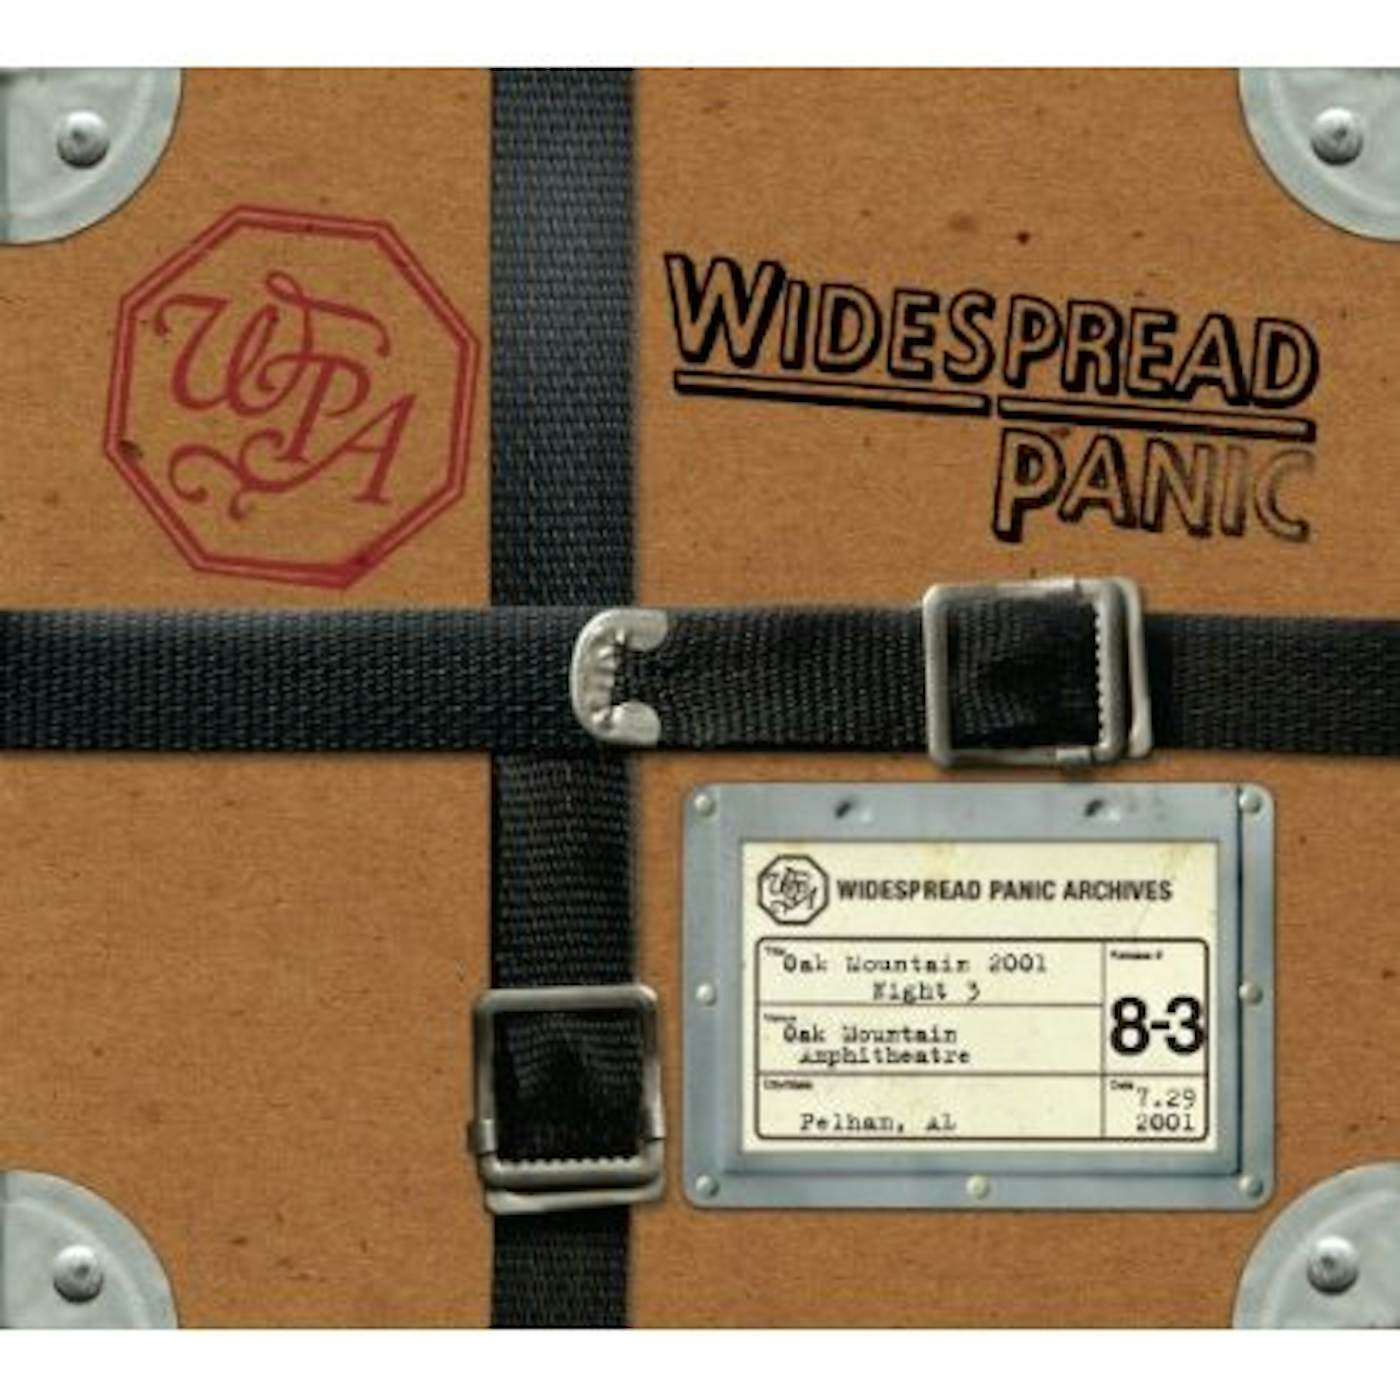 Widespread Panic OAK MOUNTAIN 2001 - NIGHT 3 CD